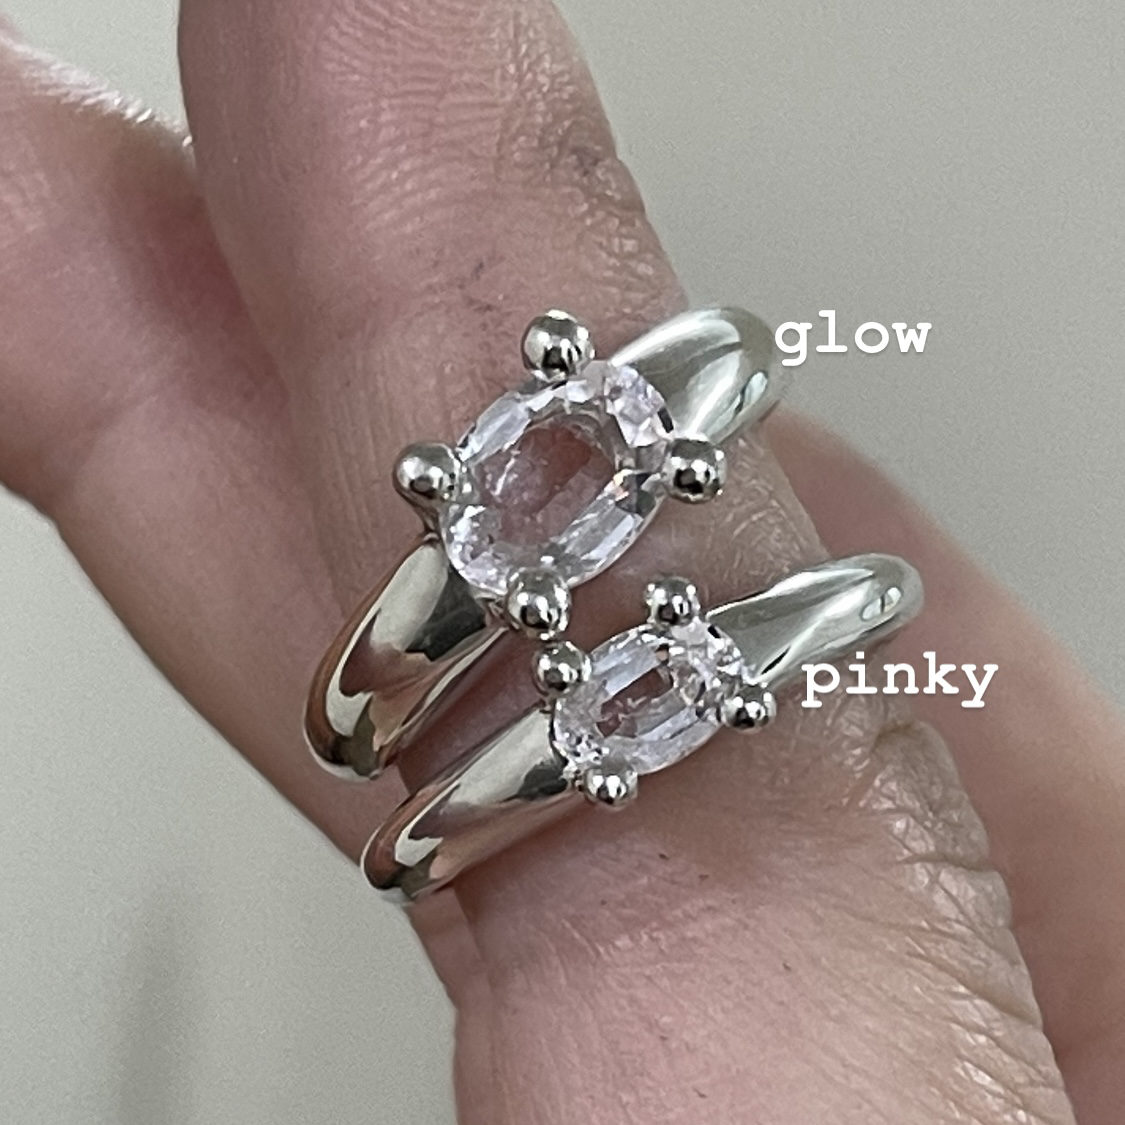 pinky / glow mushroom ring (natural morganite version)